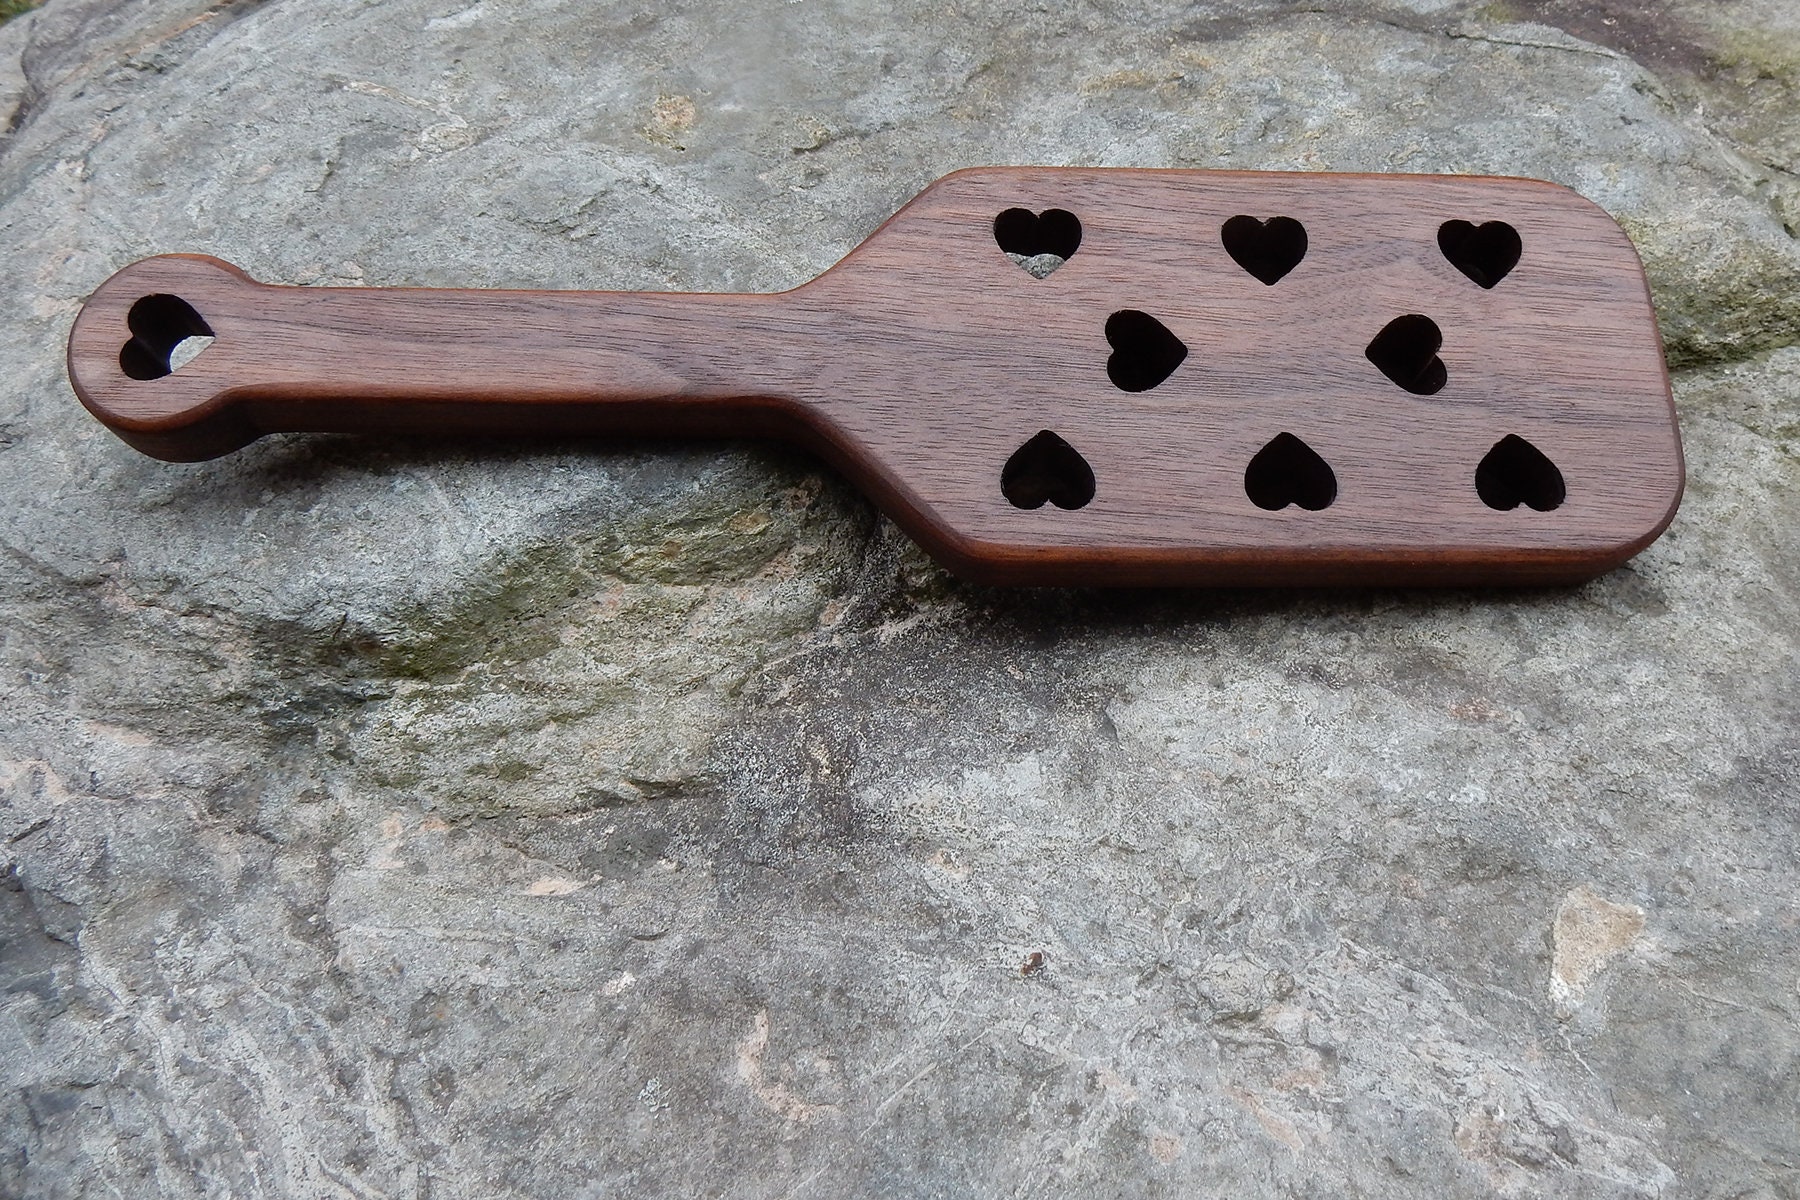 Big Heart OTK Spanking Paddle – Master Control's Woodshop & Toys